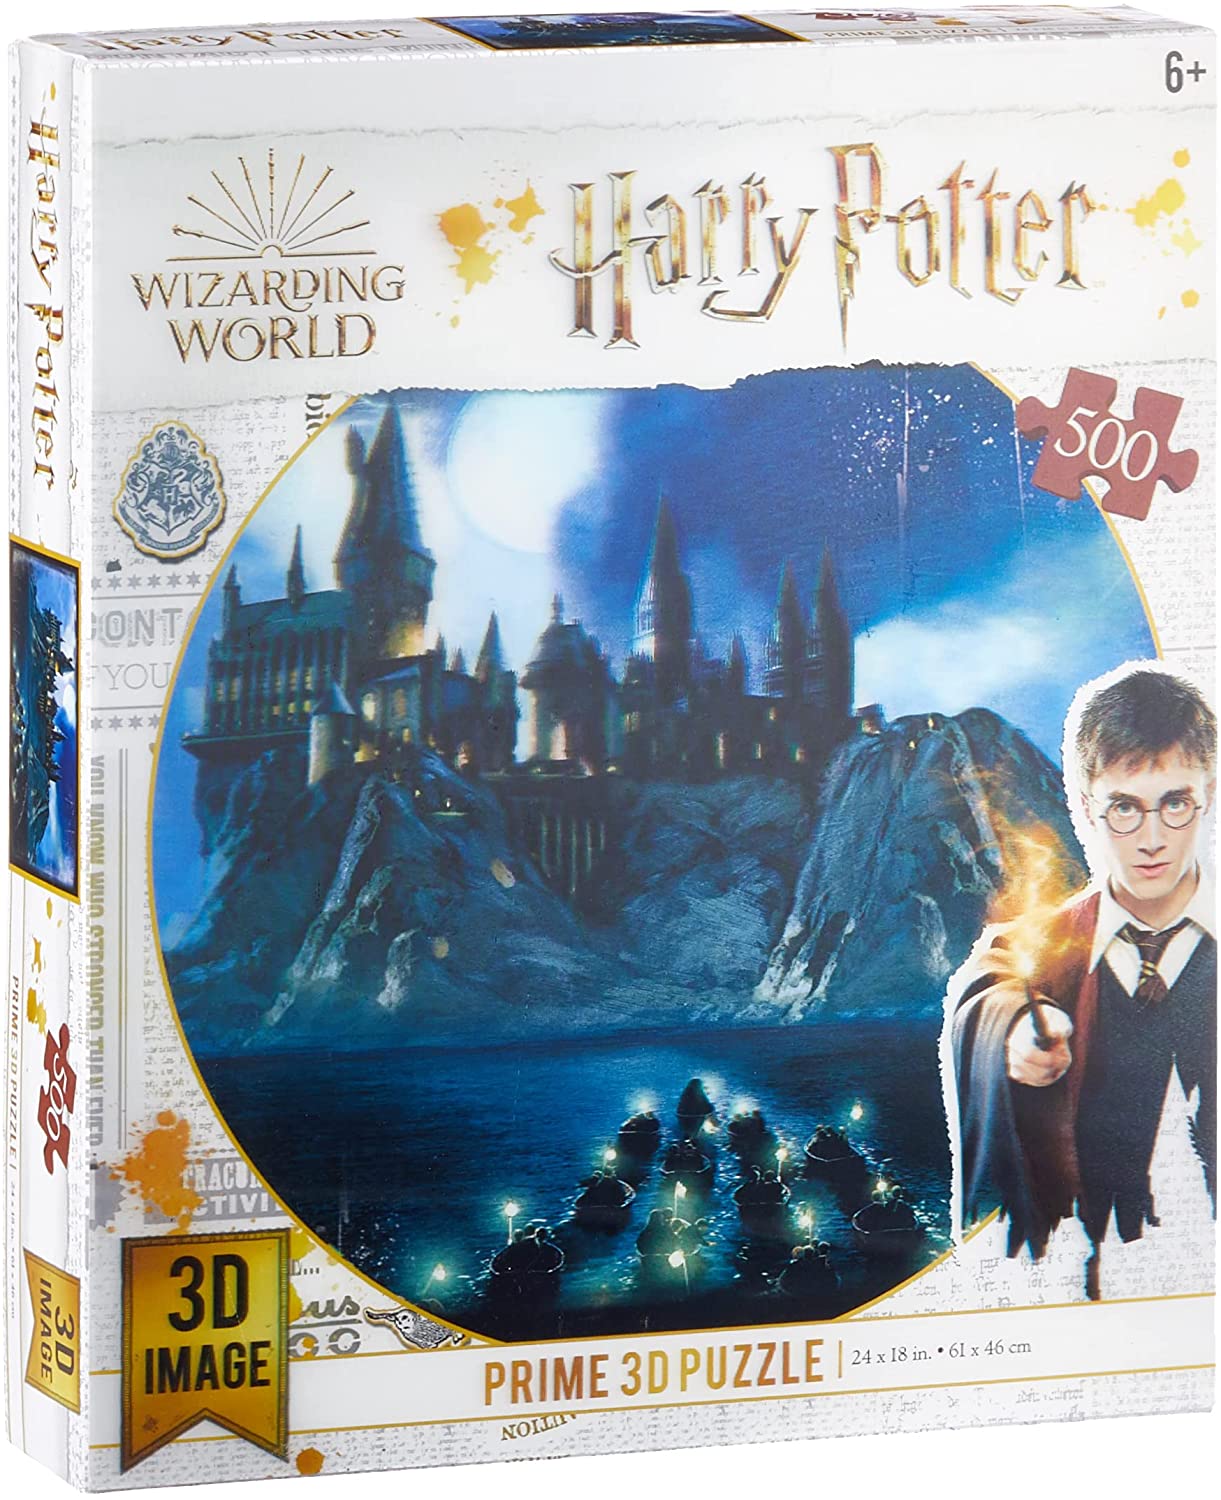 Harry Potter Prime 3D Puzzle | 3D Image | 500 Pieces